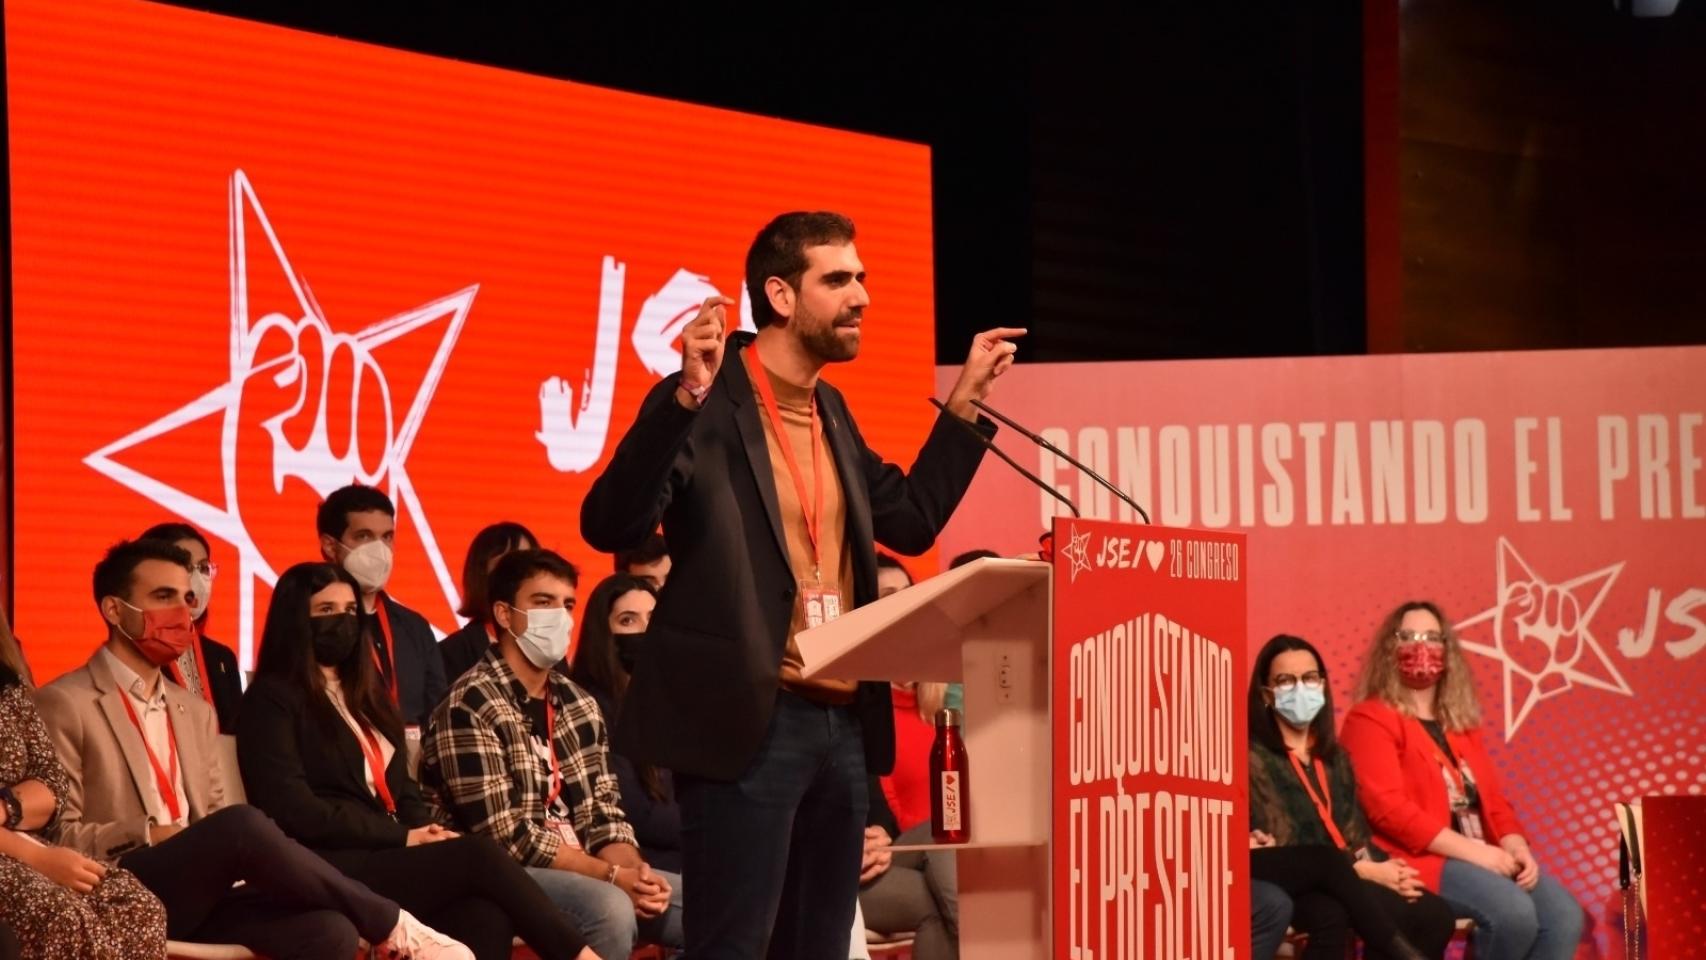 El nuevo líder de Juventudes Socialistas, Víctor Camino, interviene en el Congreso federal del pasado fin de semana.